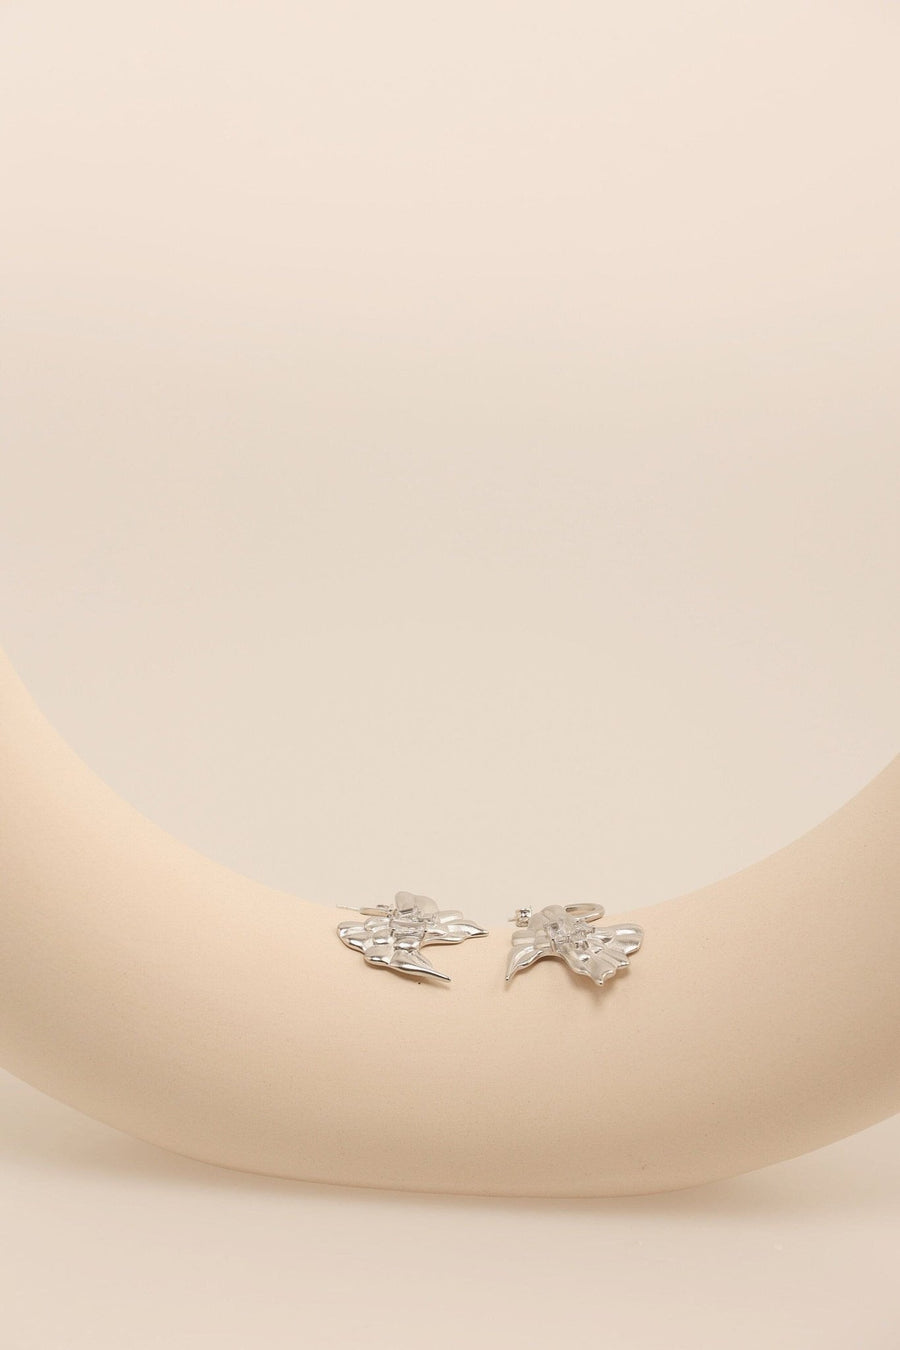 Silver Bow Dangle Earrings.